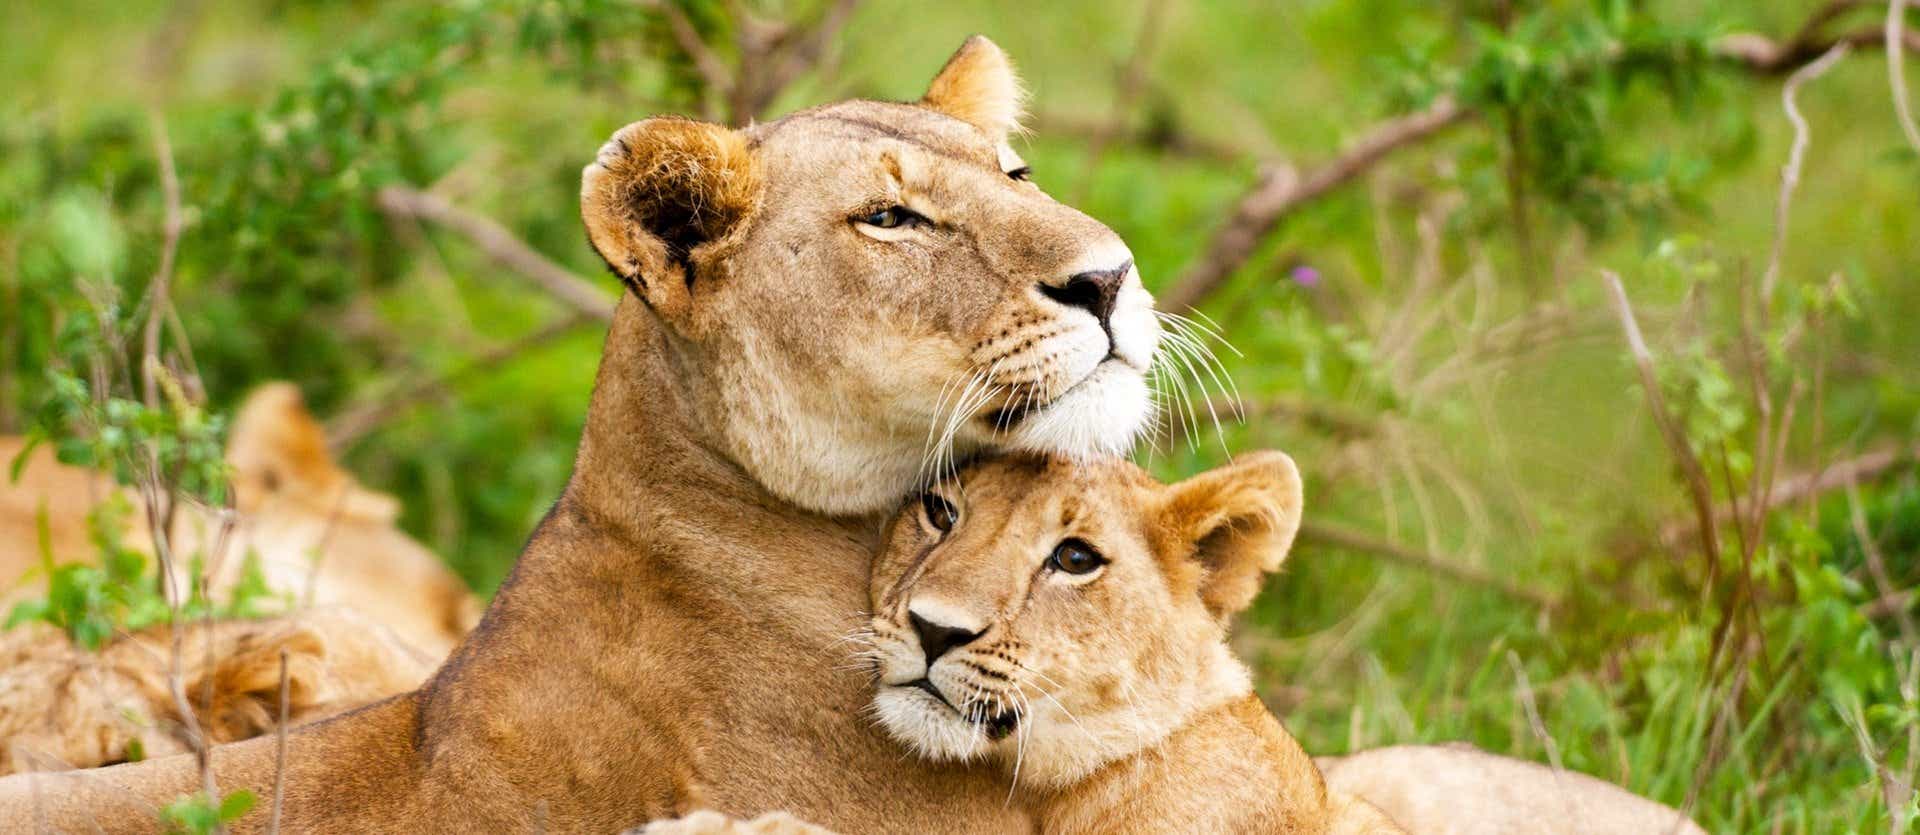 Lions <span class="iconos separador"></span> Kruger National Park